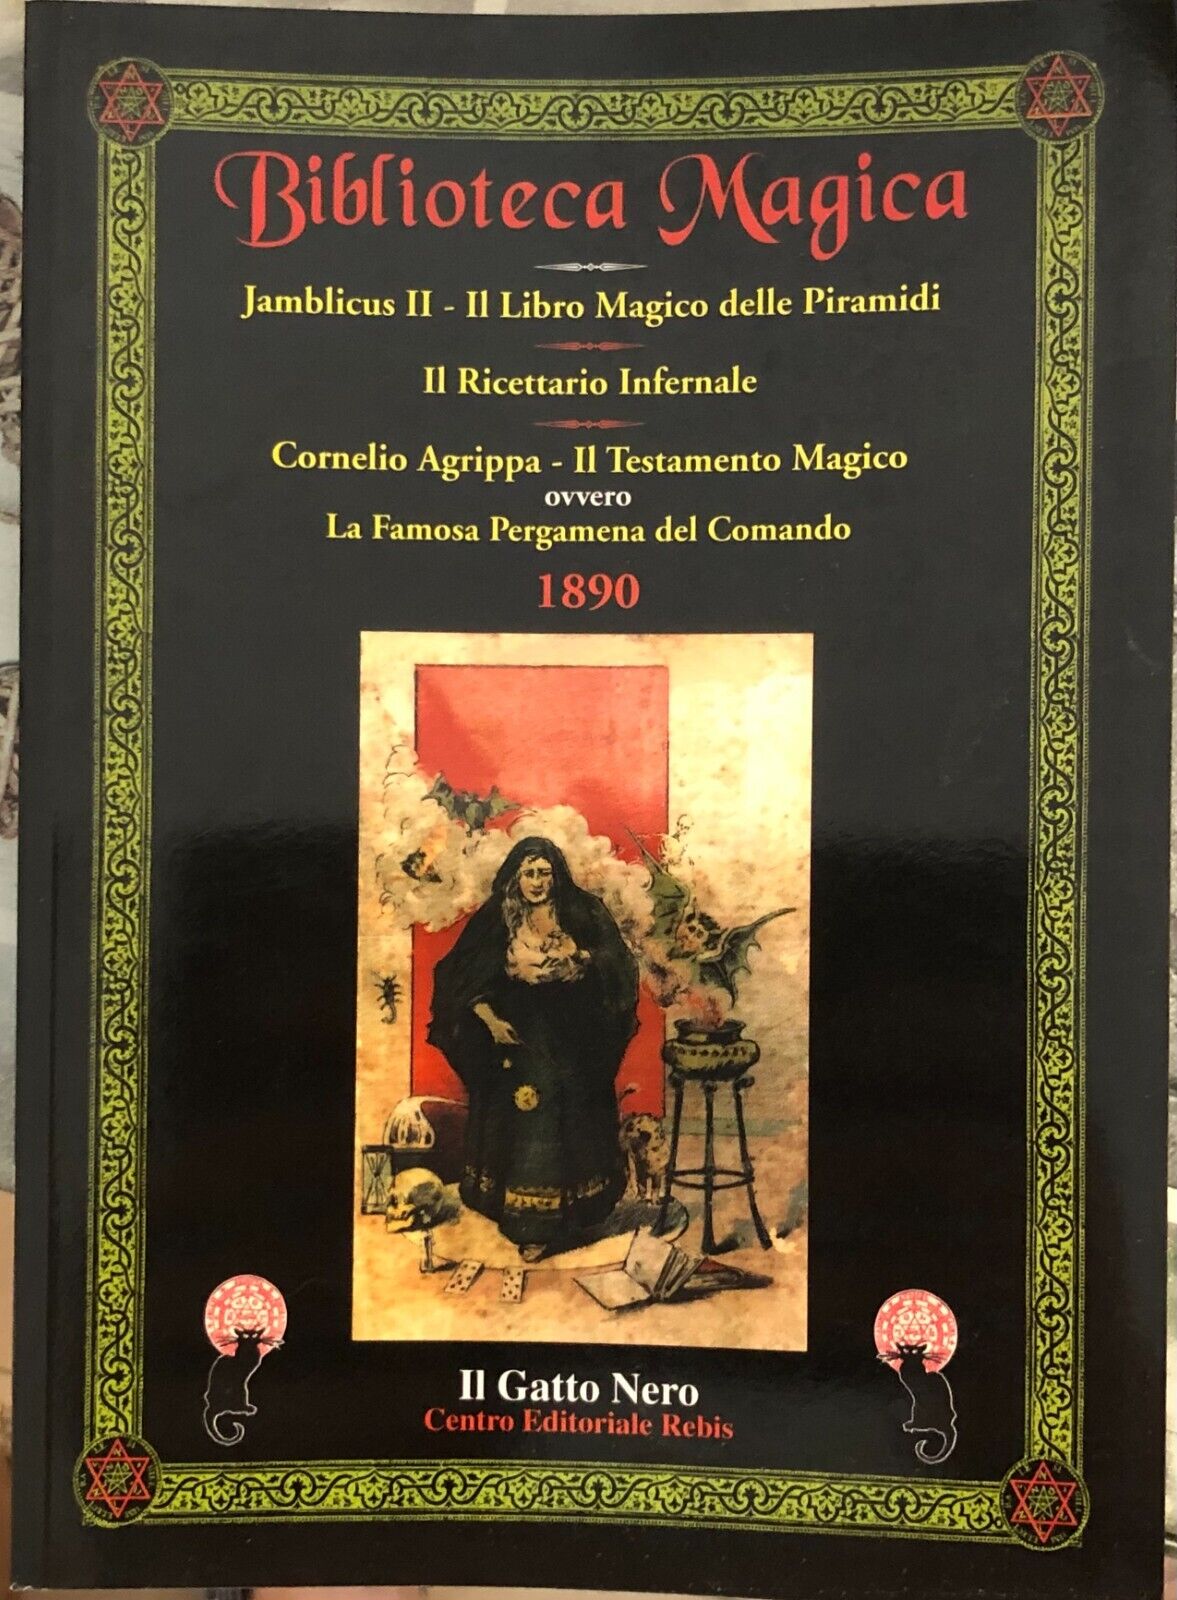  Biblioteca Magica di Aa.vv., 2006, Rebis Edizioni